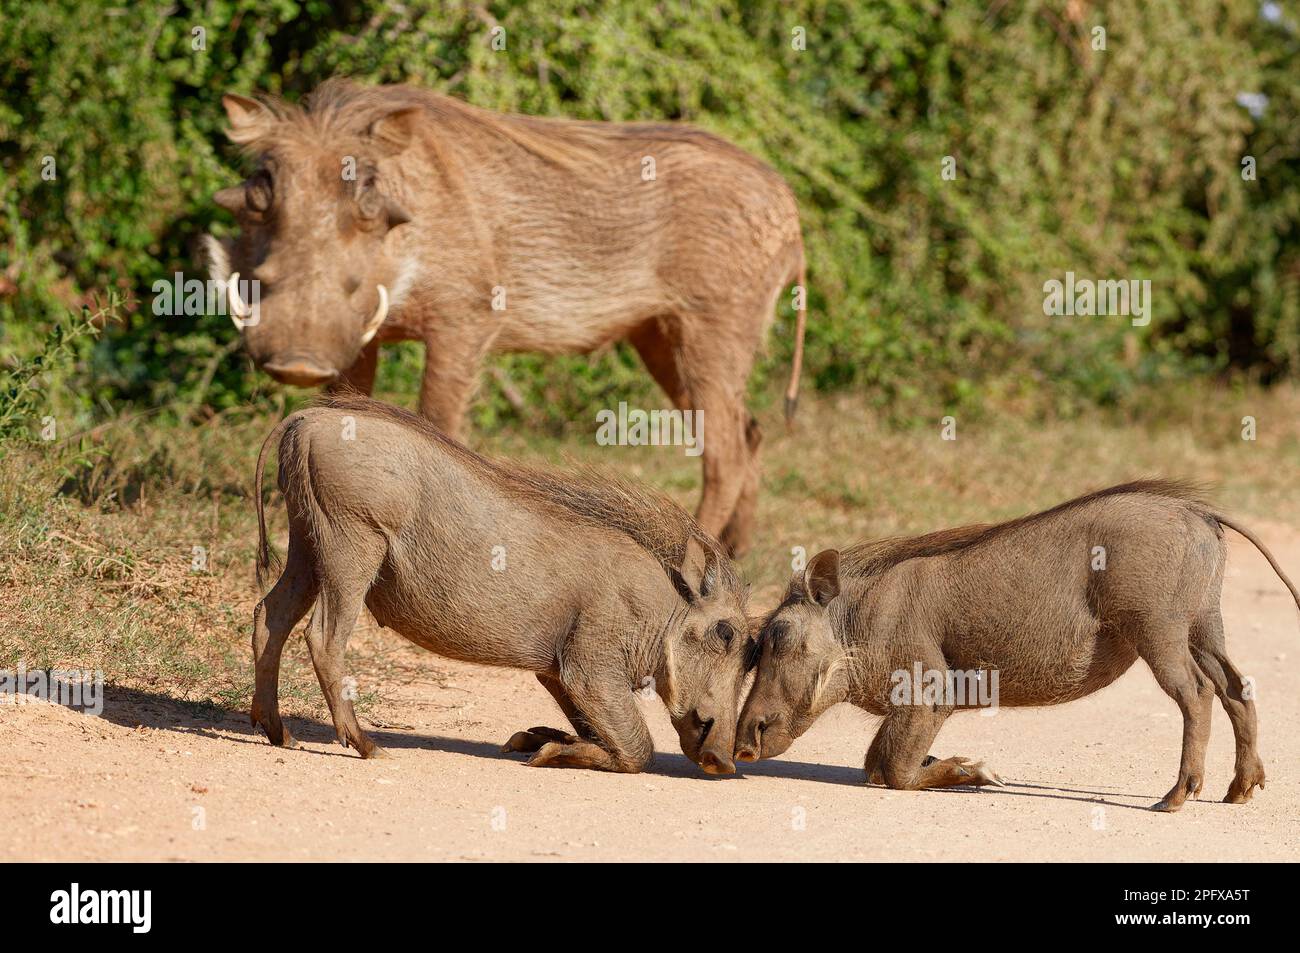 Gewöhnliche Warzenschweine (Phacochoerus africanus), zwei kniende Jugendliche Schnauze an Schnauze, die sich gegenseitig auf einer unbefestigten Straße messen, männlicher Erwachsener im Rücken, Addo NP, Stockfoto